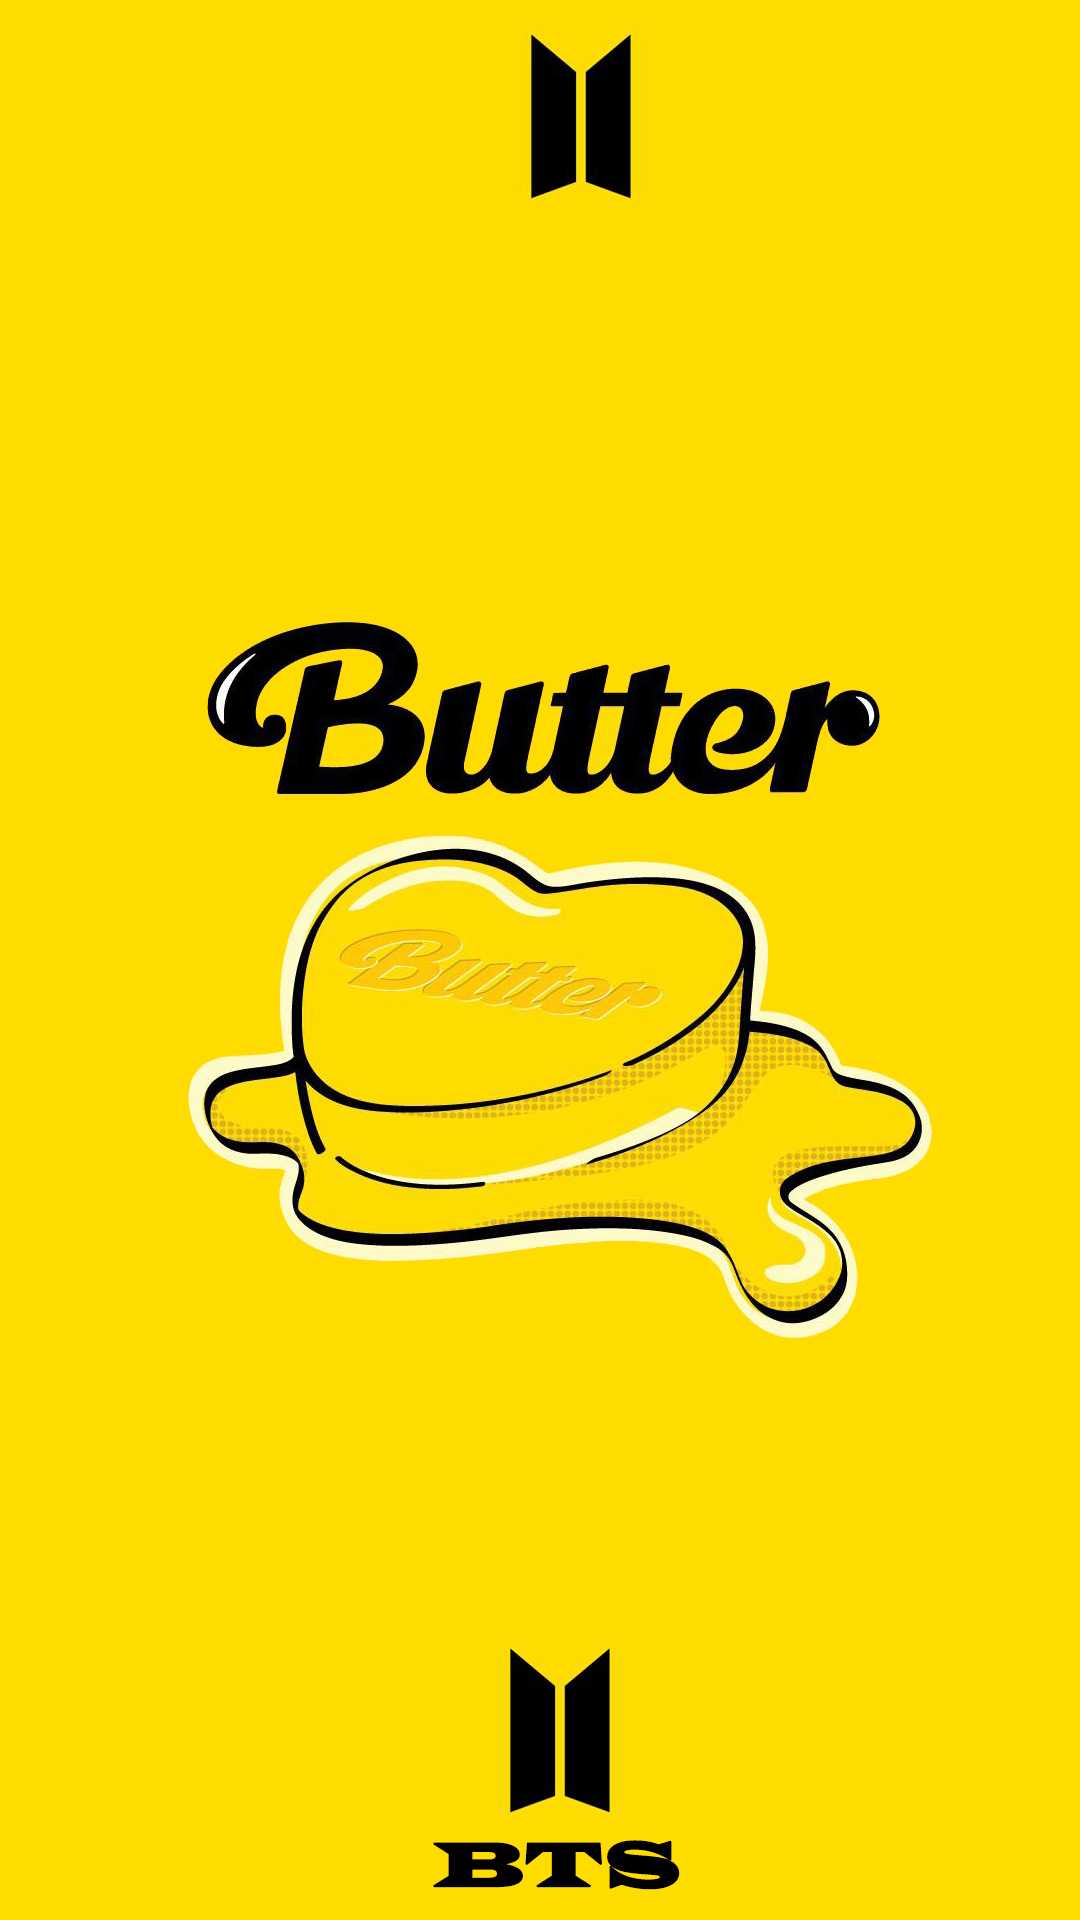 BTS Butter Wallpaper Free HD Wallpaper